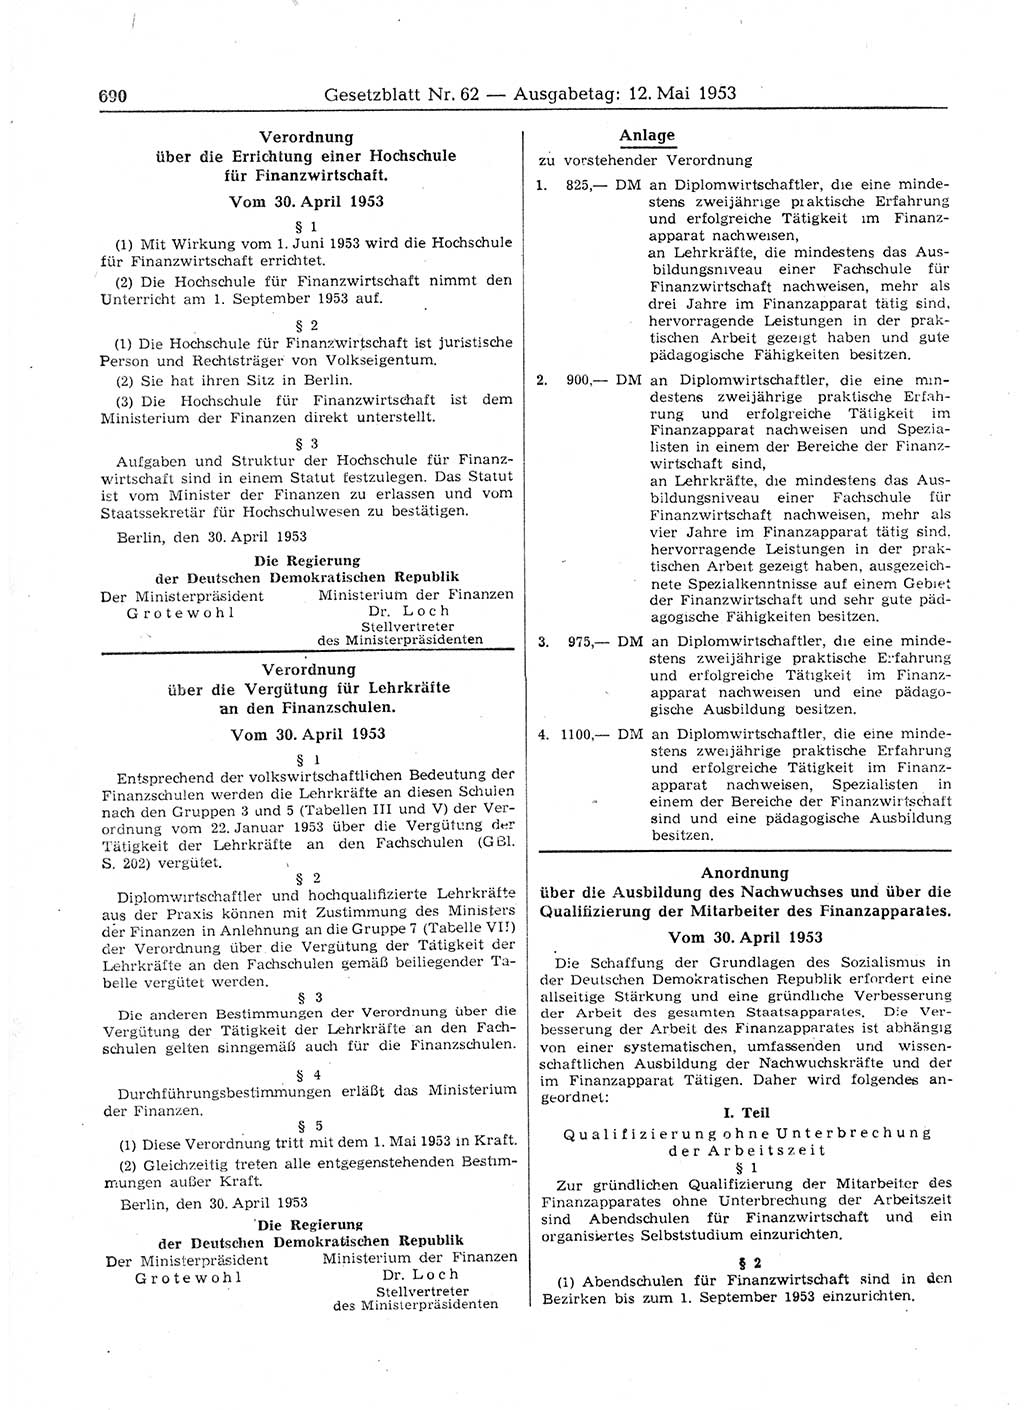 Gesetzblatt (GBl.) der Deutschen Demokratischen Republik (DDR) 1953, Seite 690 (GBl. DDR 1953, S. 690)